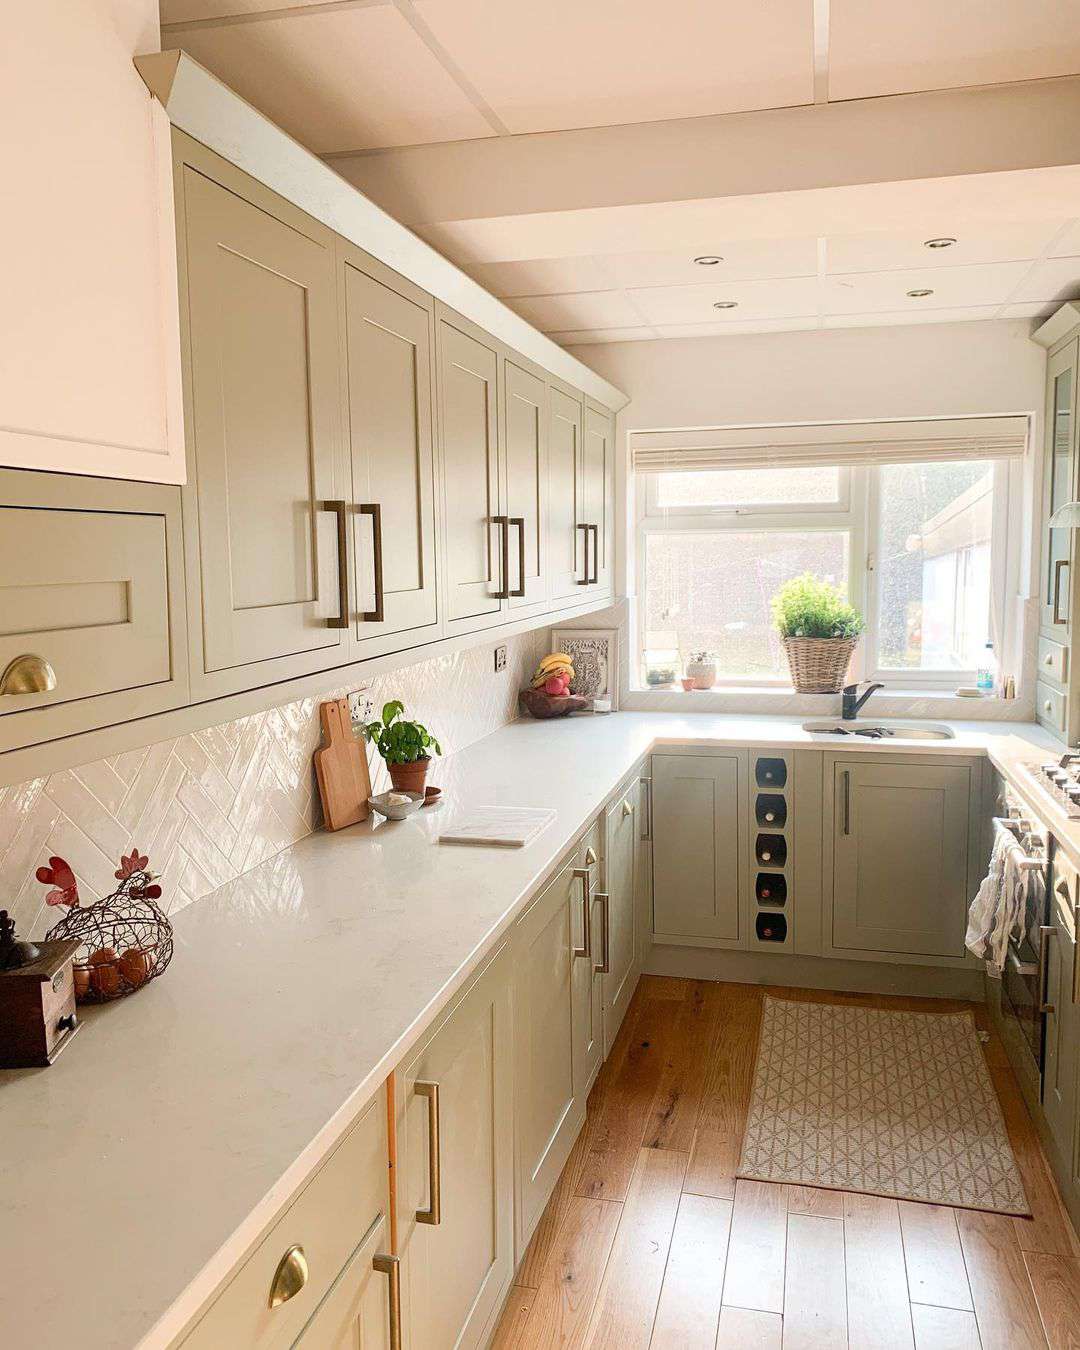 Thiết kế nhà bếp với gam màu hot nhất mùa hè năm nay - màu xanh lá cây xô thơm - Ảnh 6.